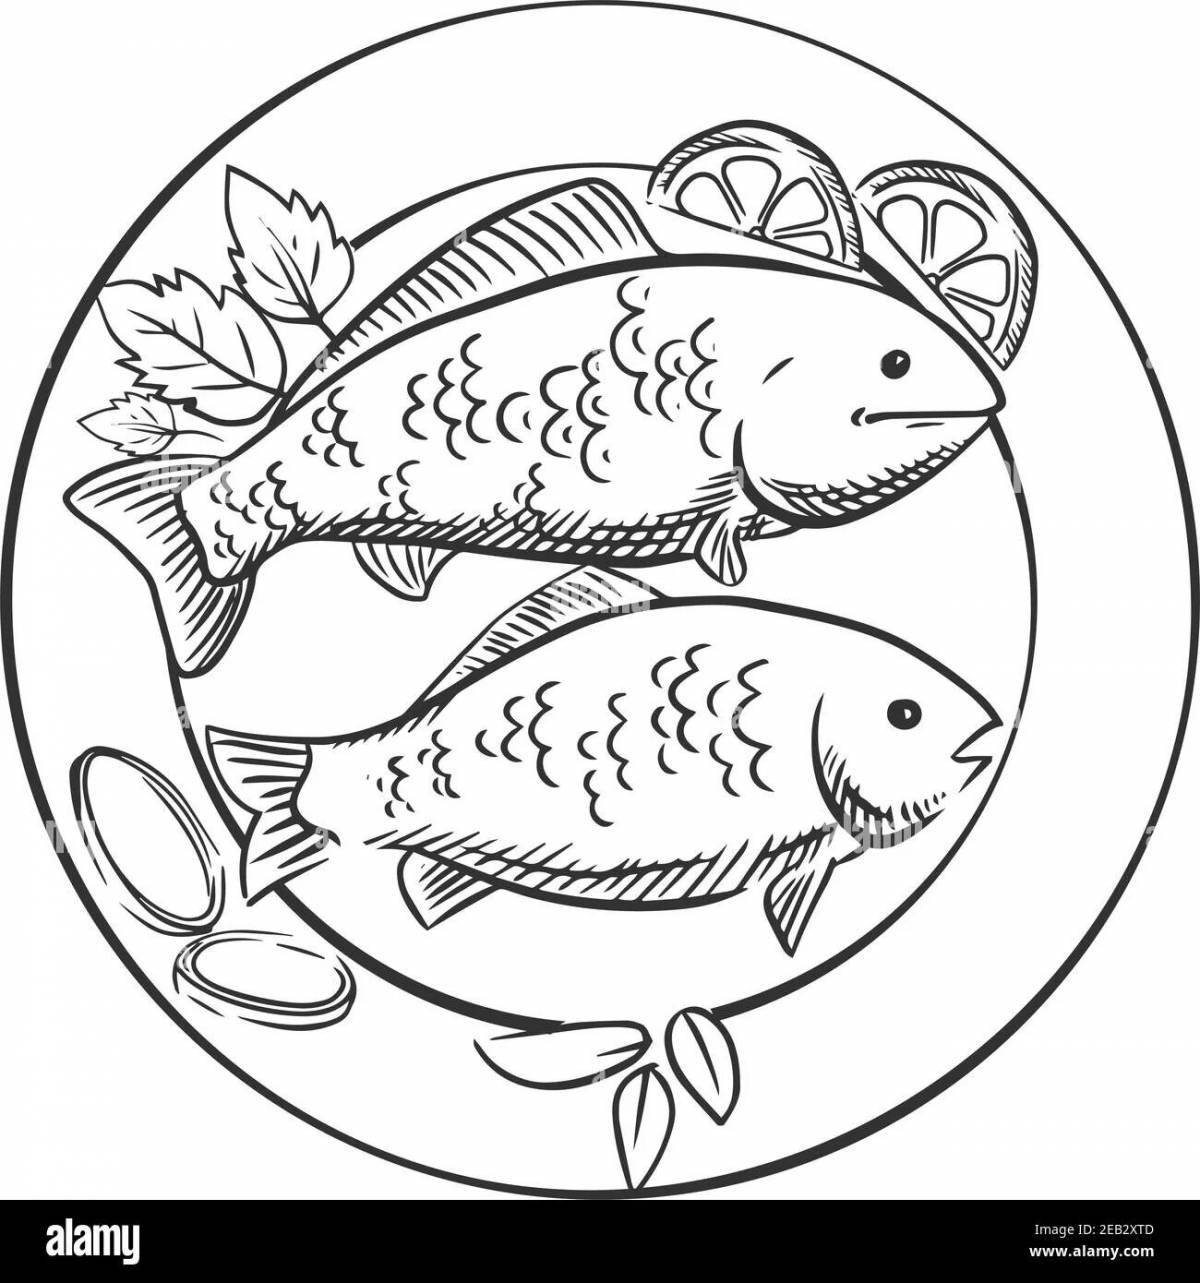 Великолепная страница раскраски жареной рыбы